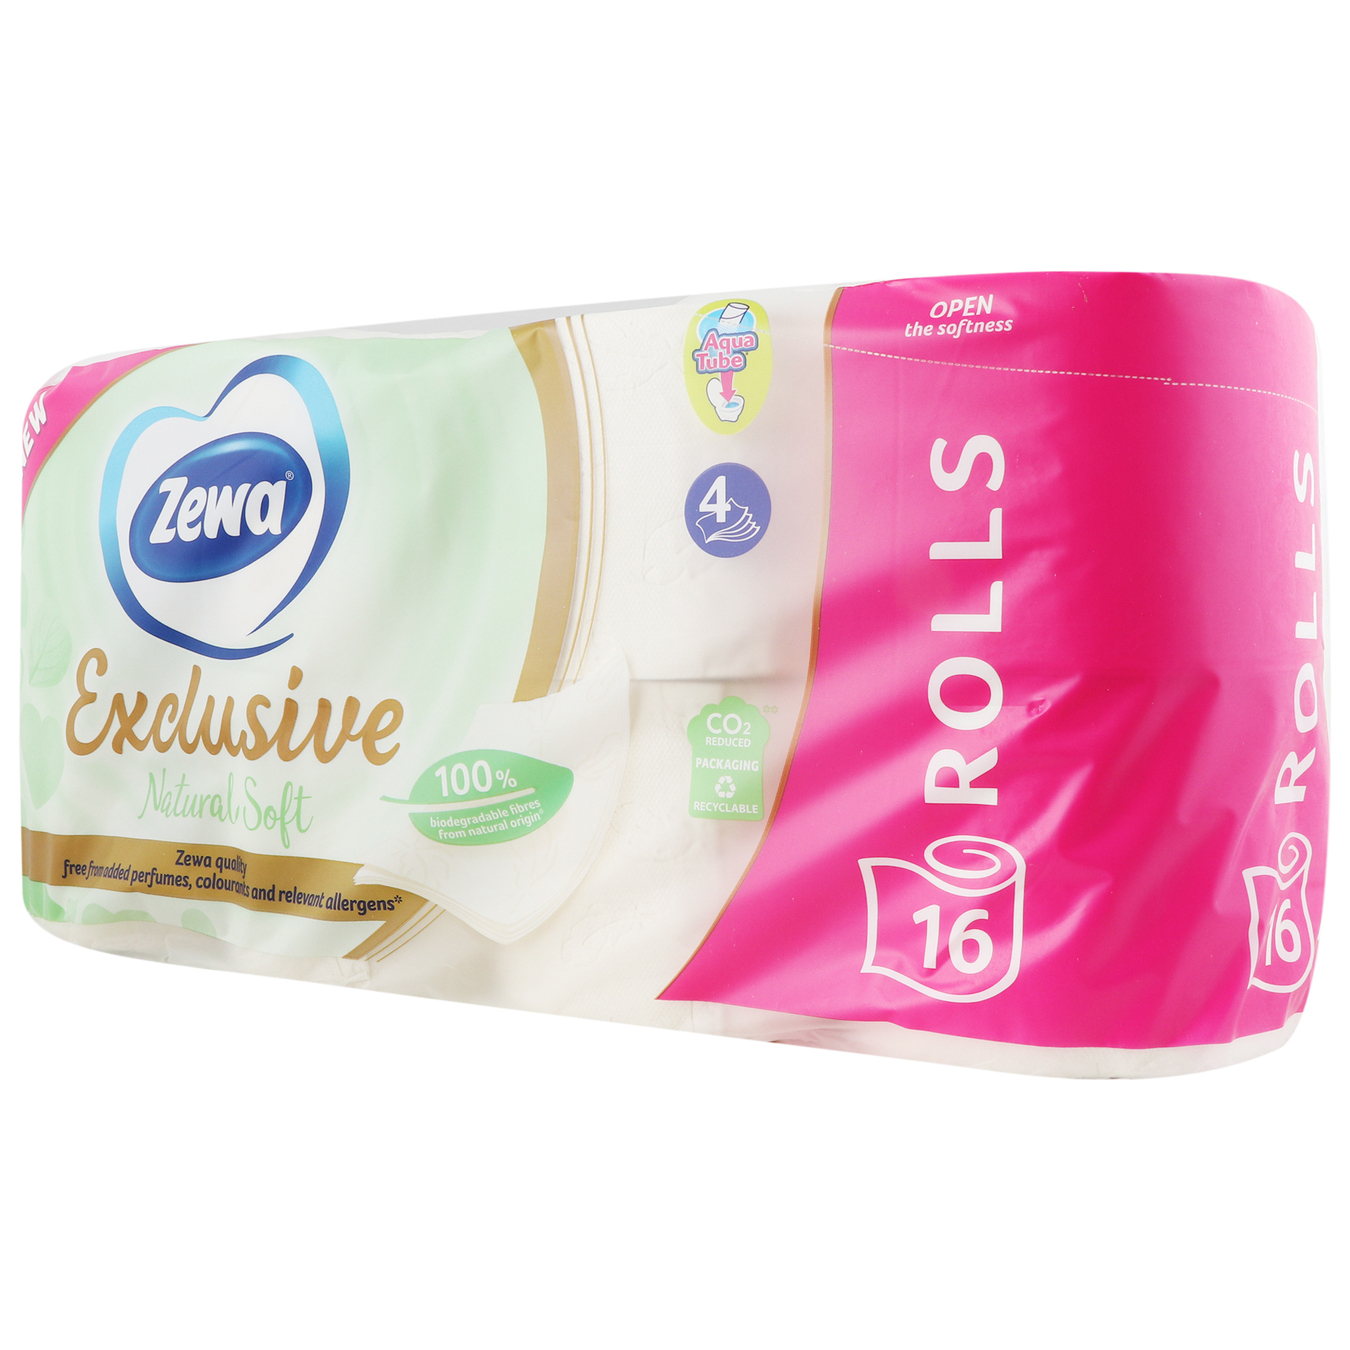 Туалетная бумага Zewa Exclusive Natural soft 16р